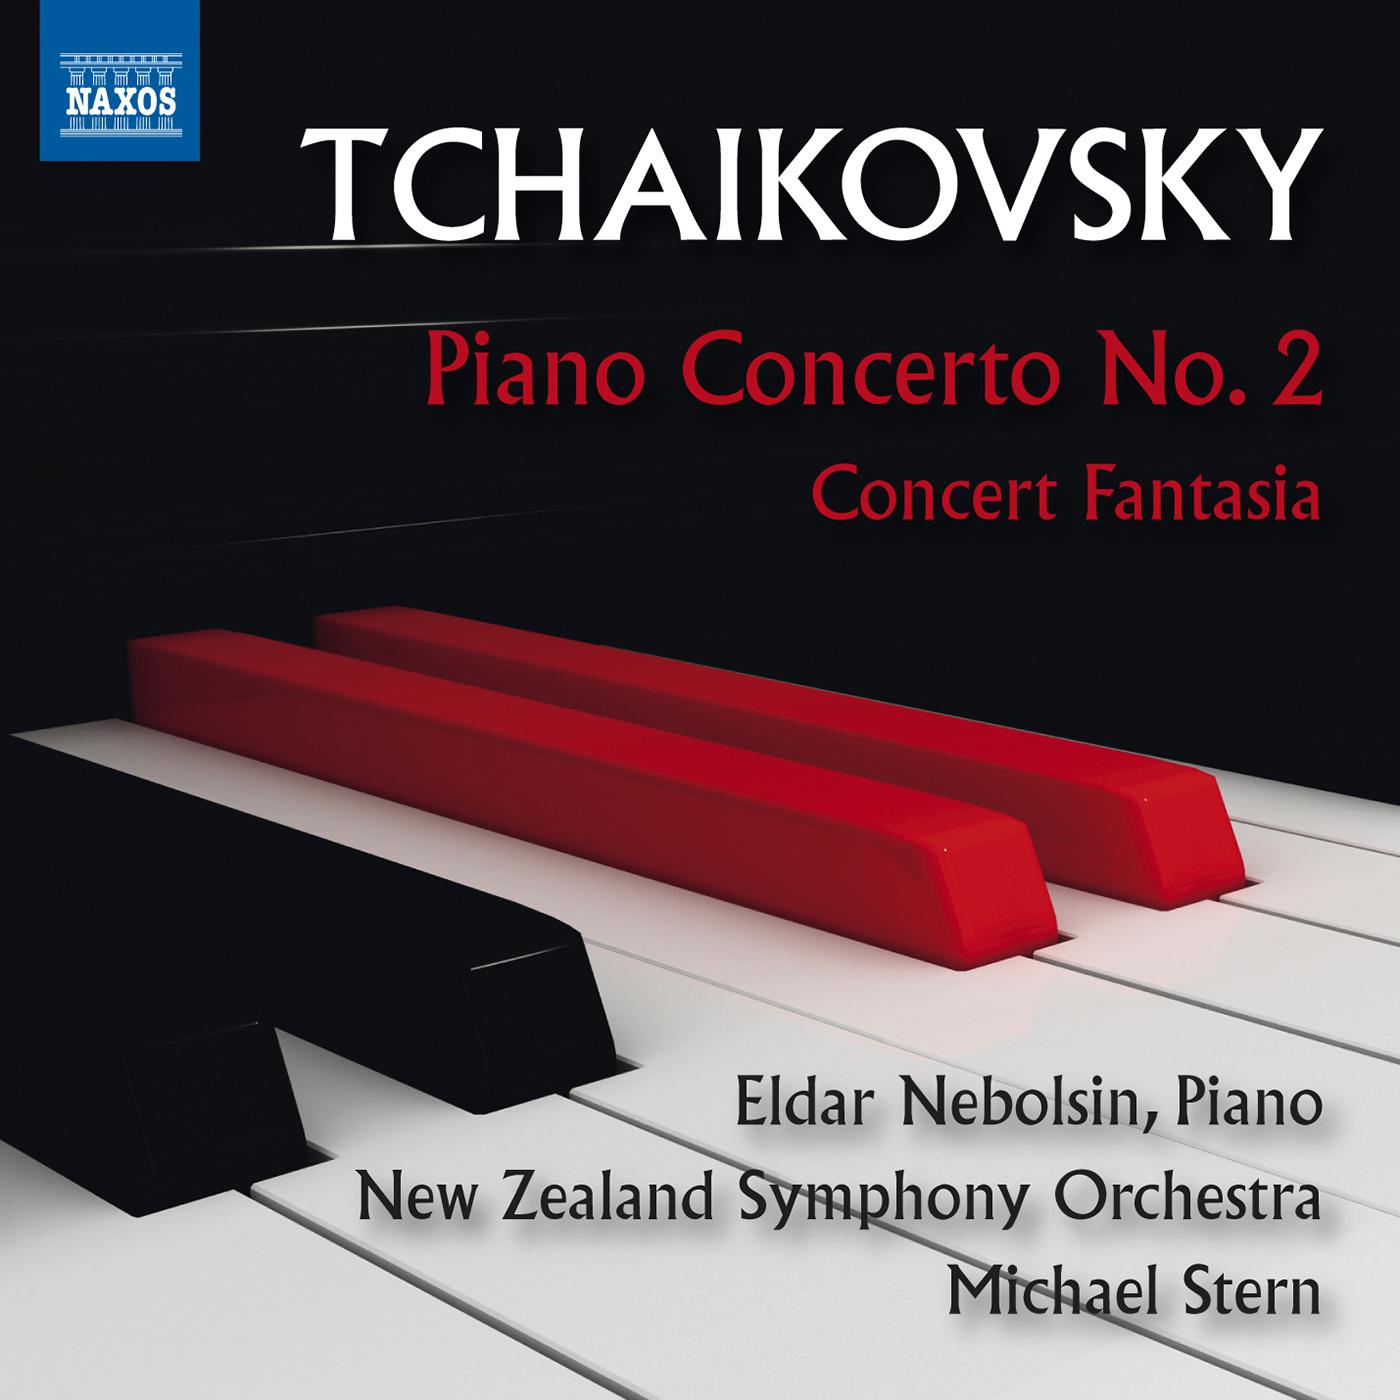 Piano Concerto No. 2 in G Major, Op. 44:I. Allegro brillante